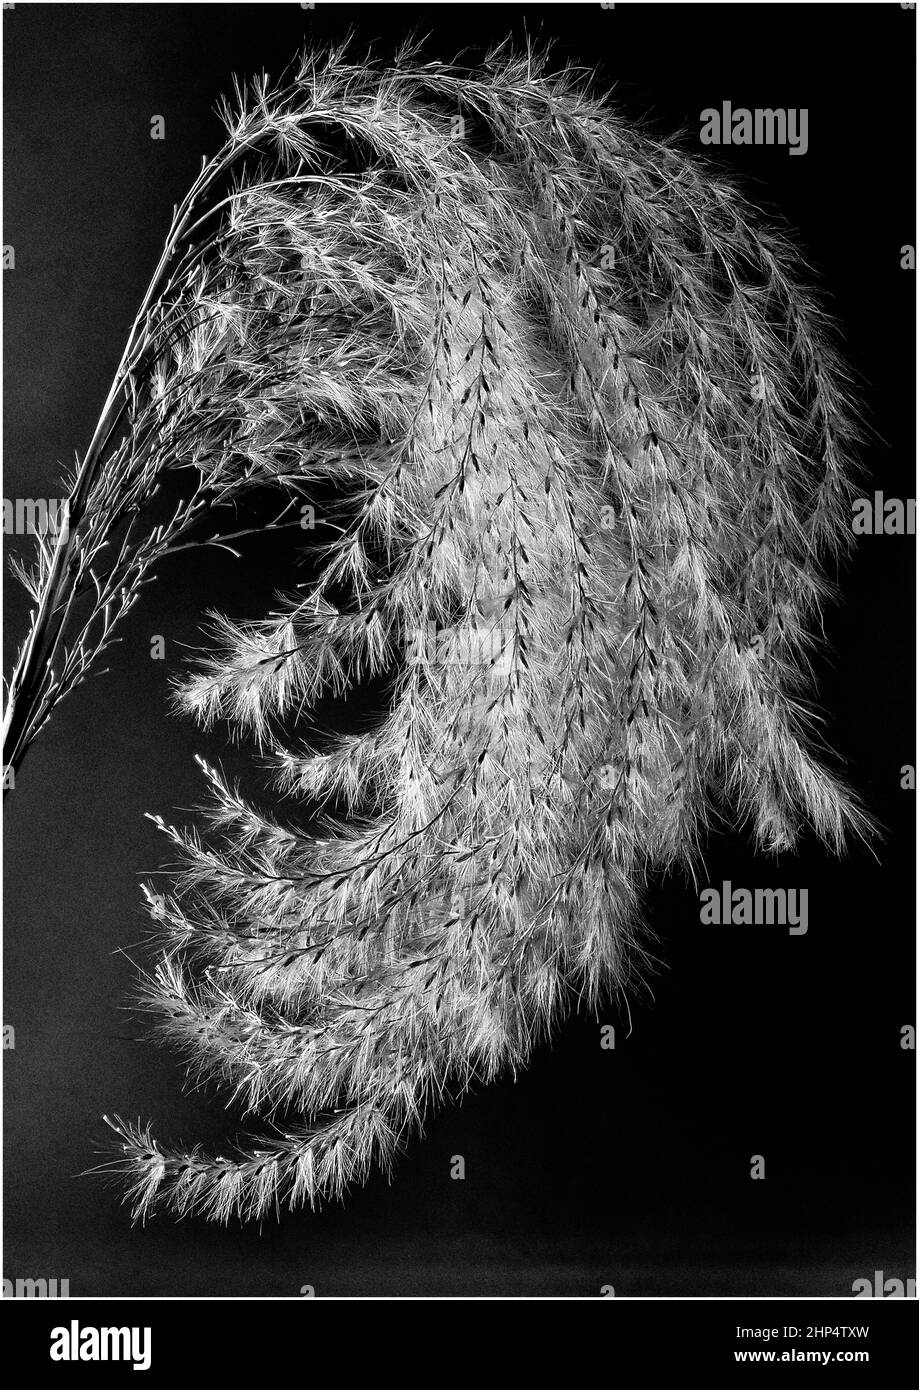 Miscanto, nombre común: Eulalia o cabeza de semilla de pasto elefante fotografiada en primer plano para mostrar detalles. Foto de stock